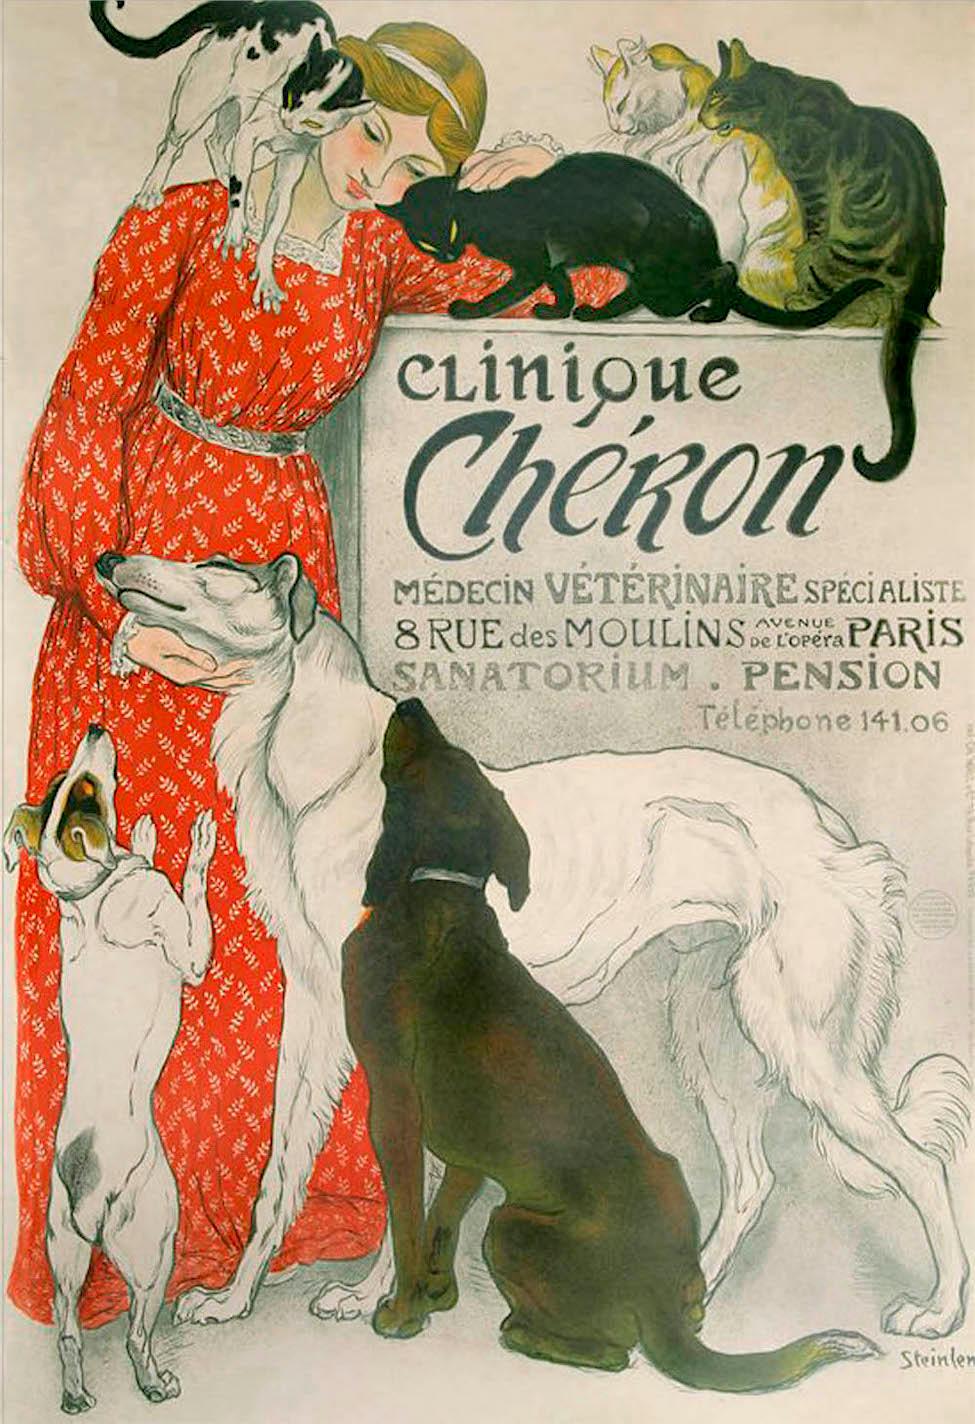 CLINIQUE CHÉRON est une recréation lithographique d'art d'après l'affiche publicitaire française originale de 1905 créée par Théophile Steinlen pour l'entreprise vétérinaire CLINIQUE CHÉRON France.
Fabriqué à la main aux États-Unis par des maîtres